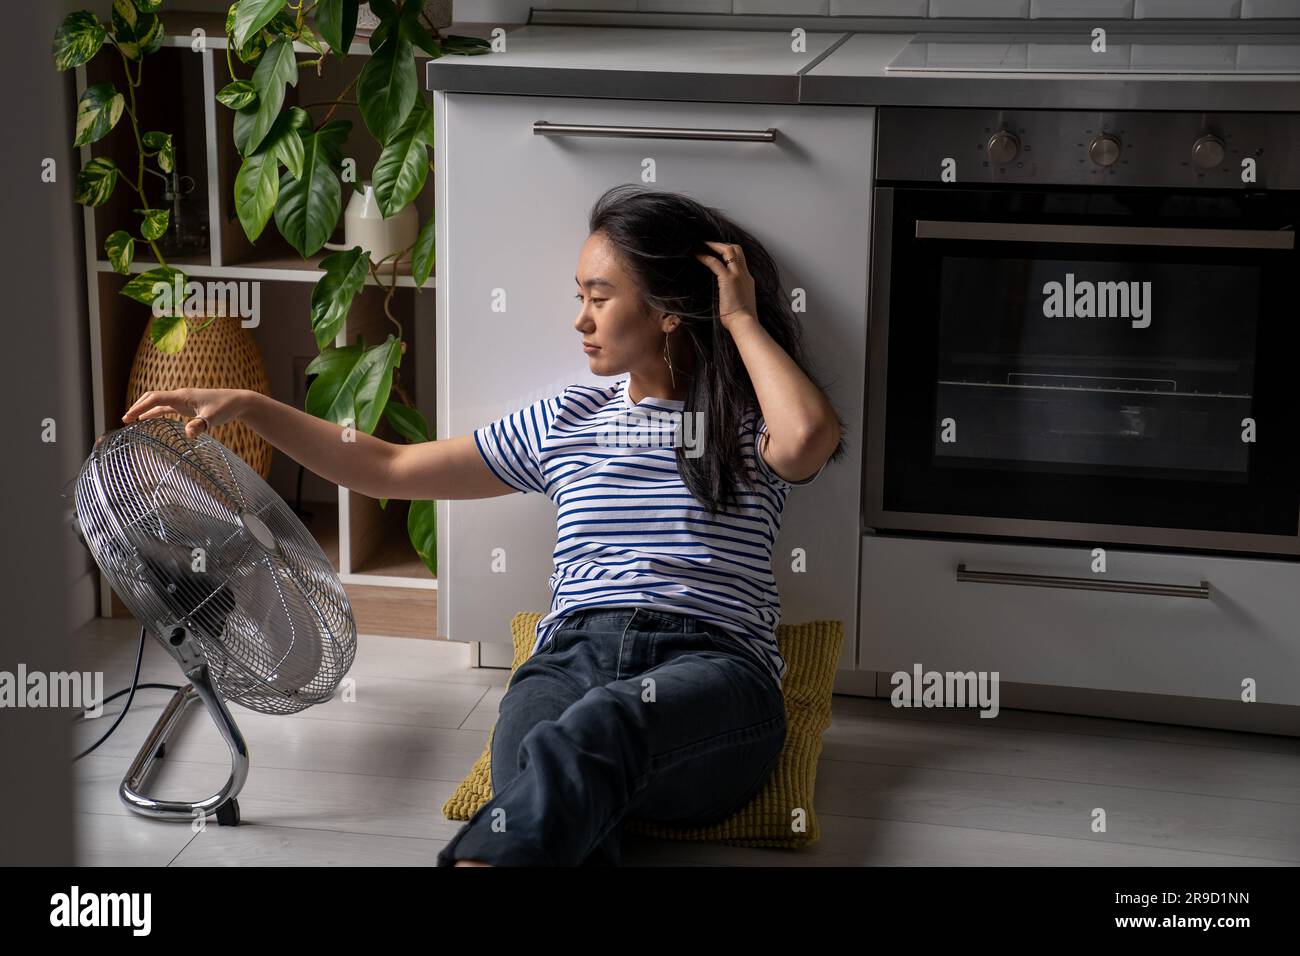 Joyeuse positive asiatique fille aime le vent froid du ventilateur électrique se trouve sur le sol dans la cuisine de la maison Banque D'Images